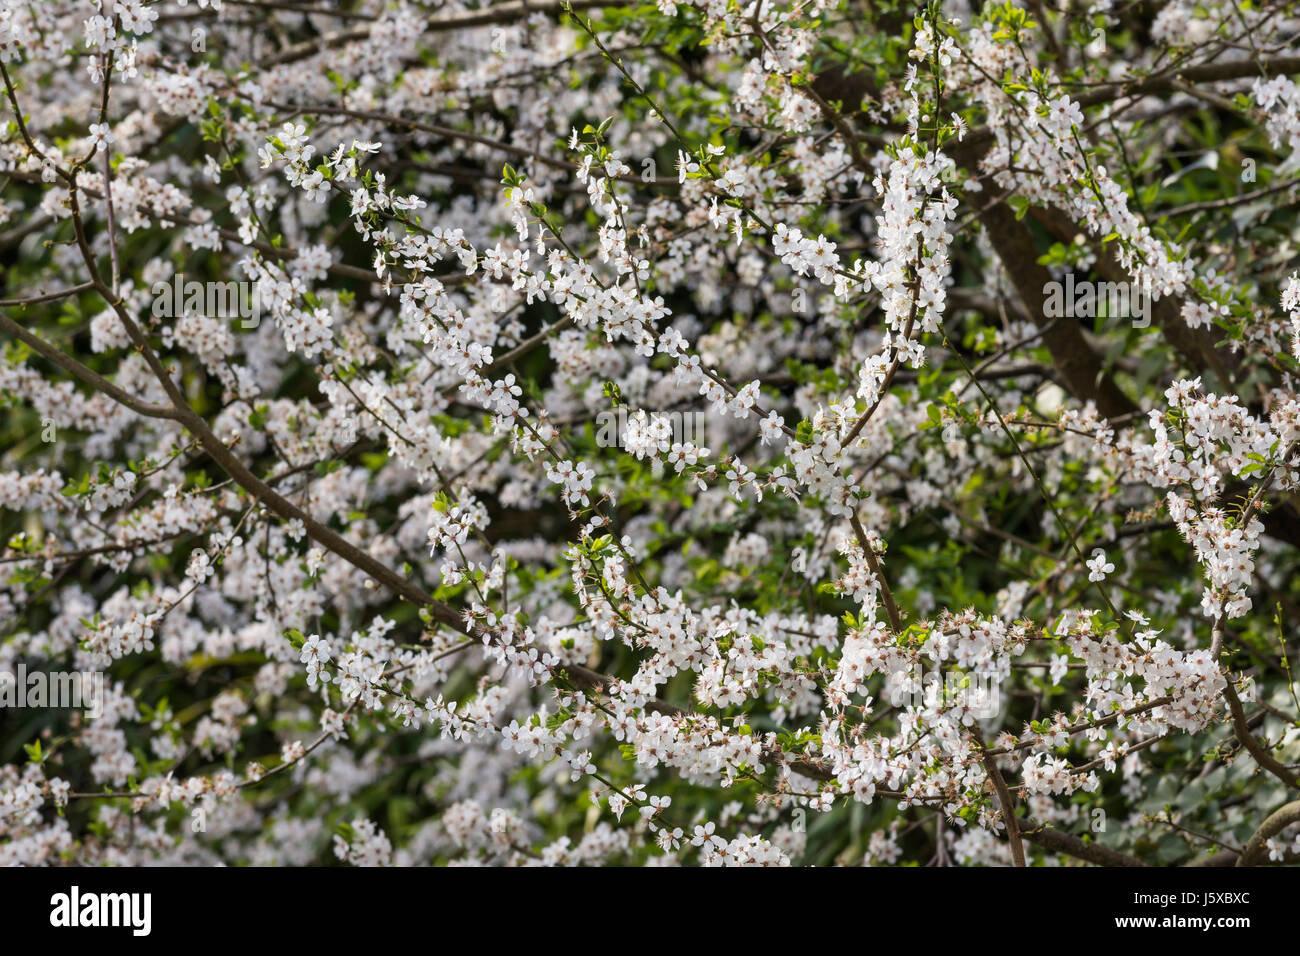 Cherry, Wild Cherry, Prunus avium, Small white blossoms growing outdoor. Stock Photo